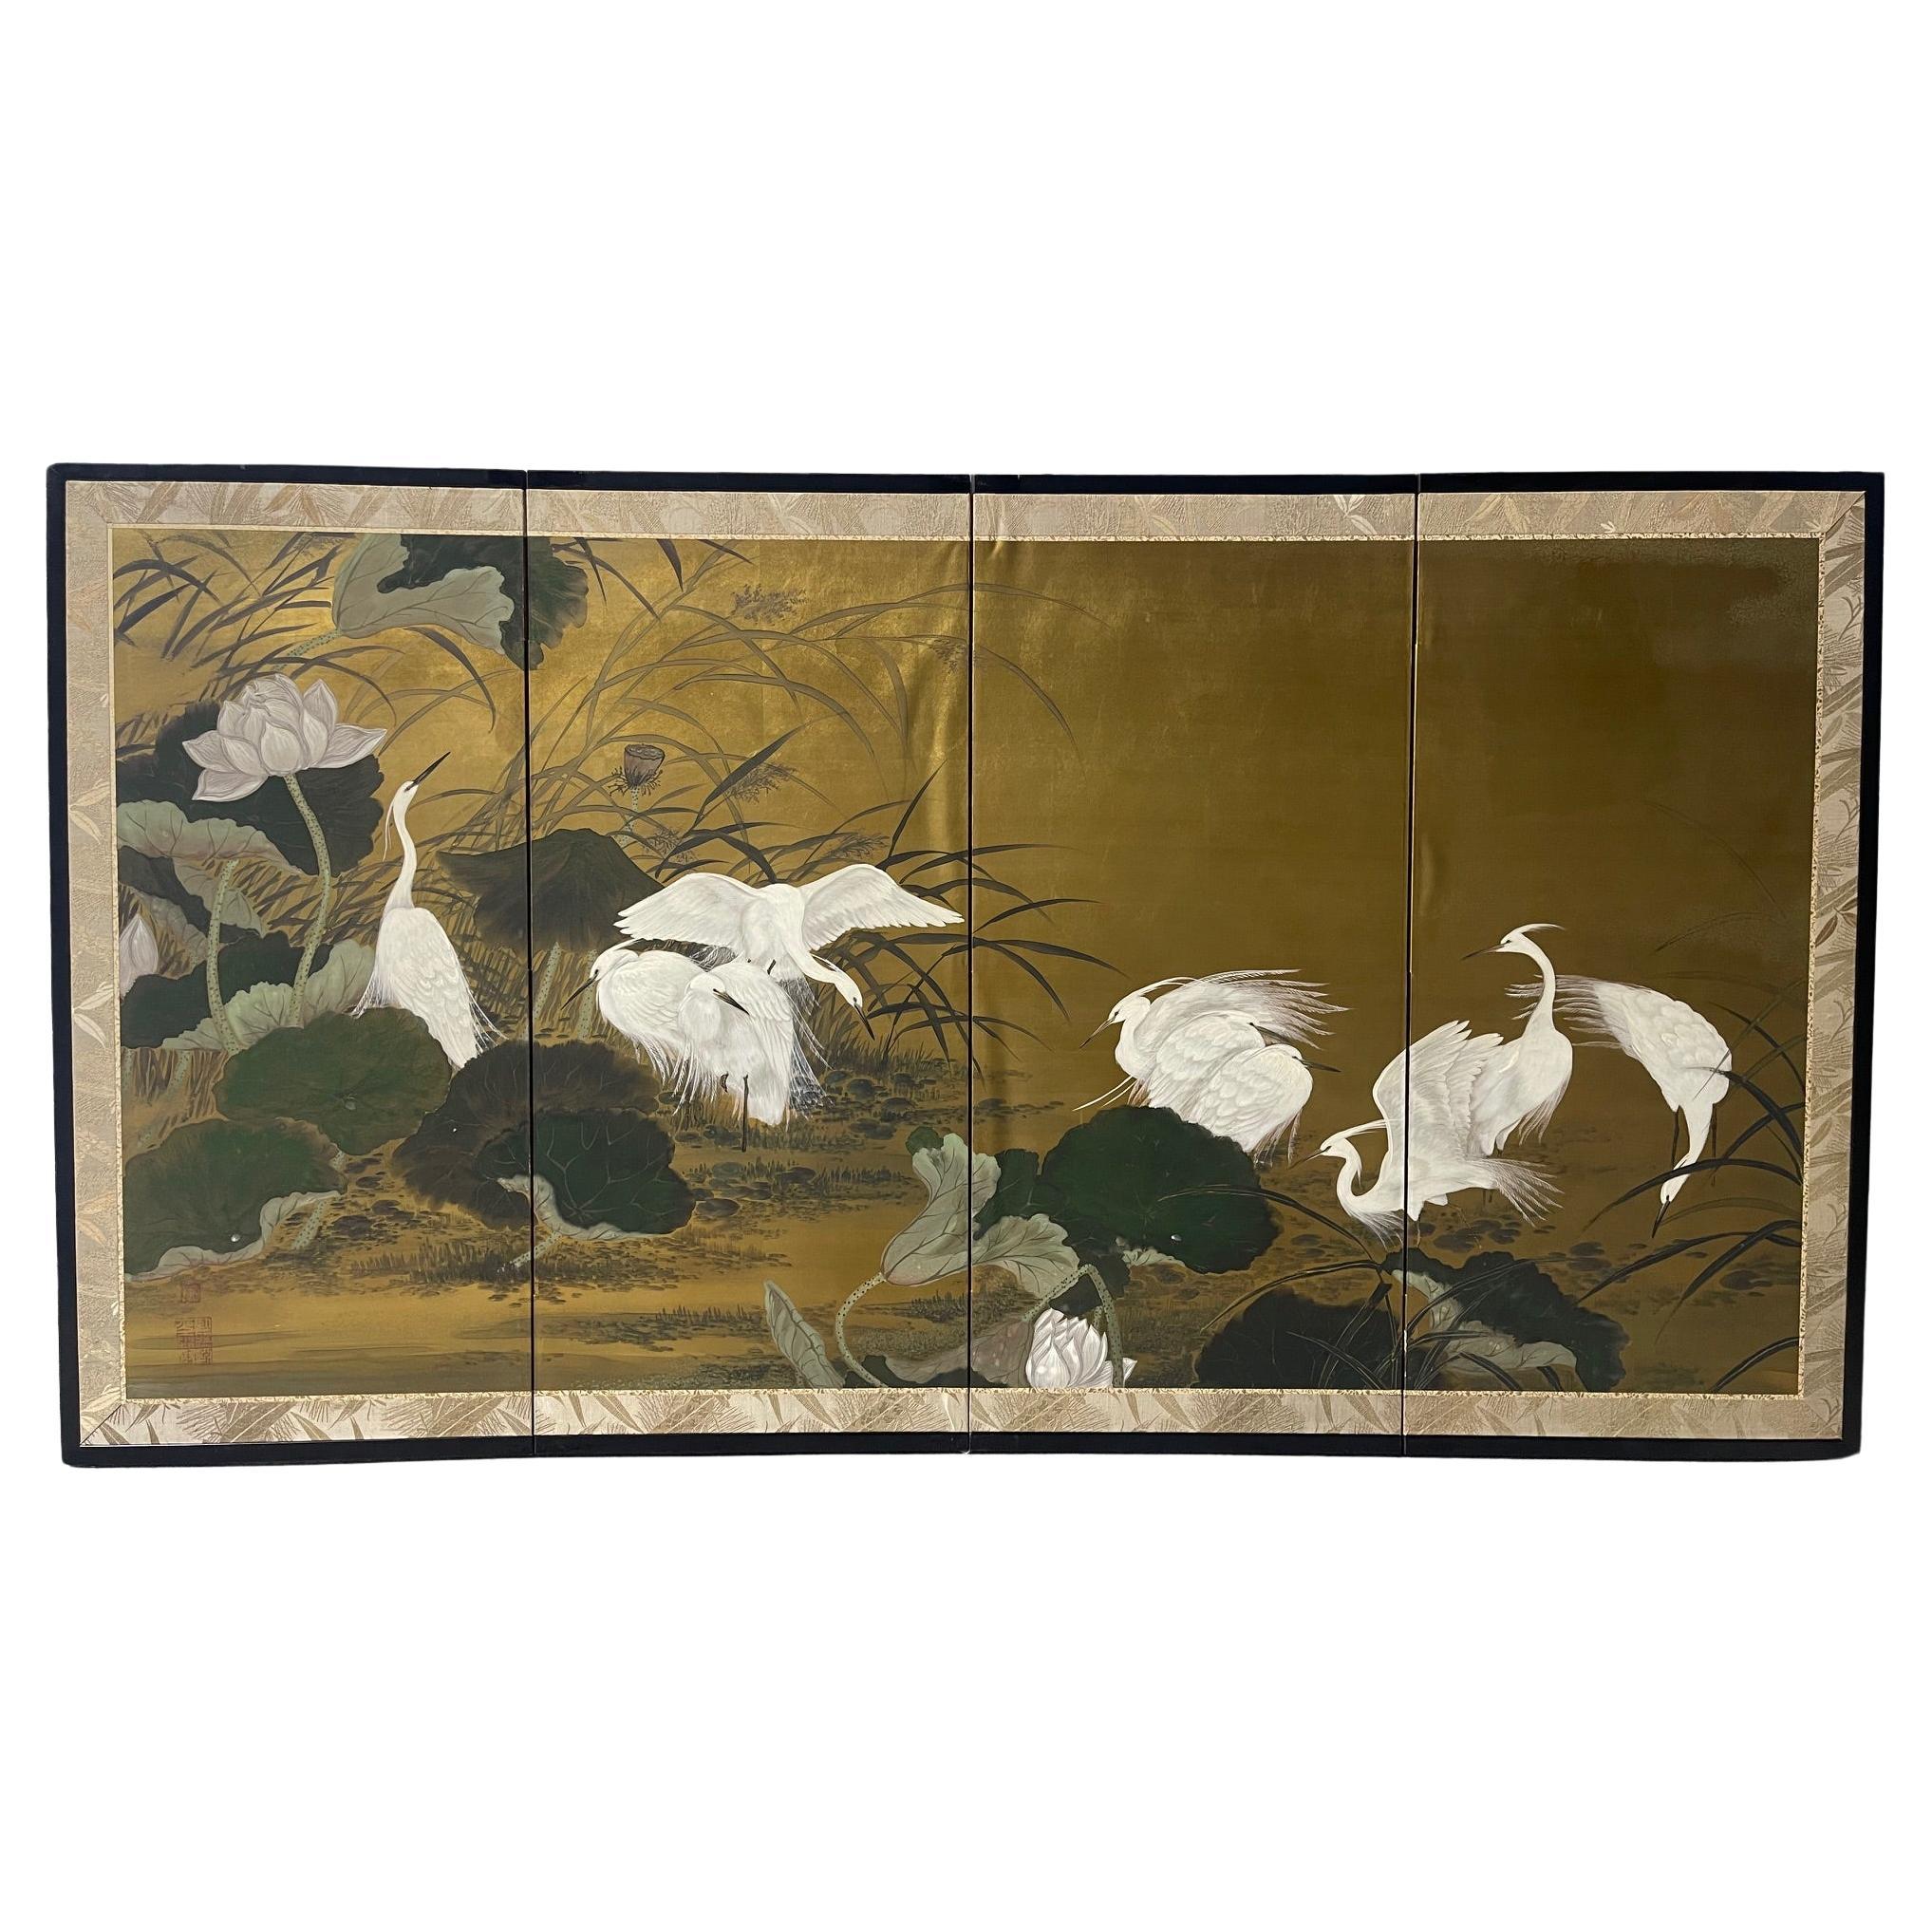 Vierteiliger japanischer Byobu-Paravent mit klappbarem Byobu-Raumteiler mit einer Szene von Egrets, 20. Jahrhundert